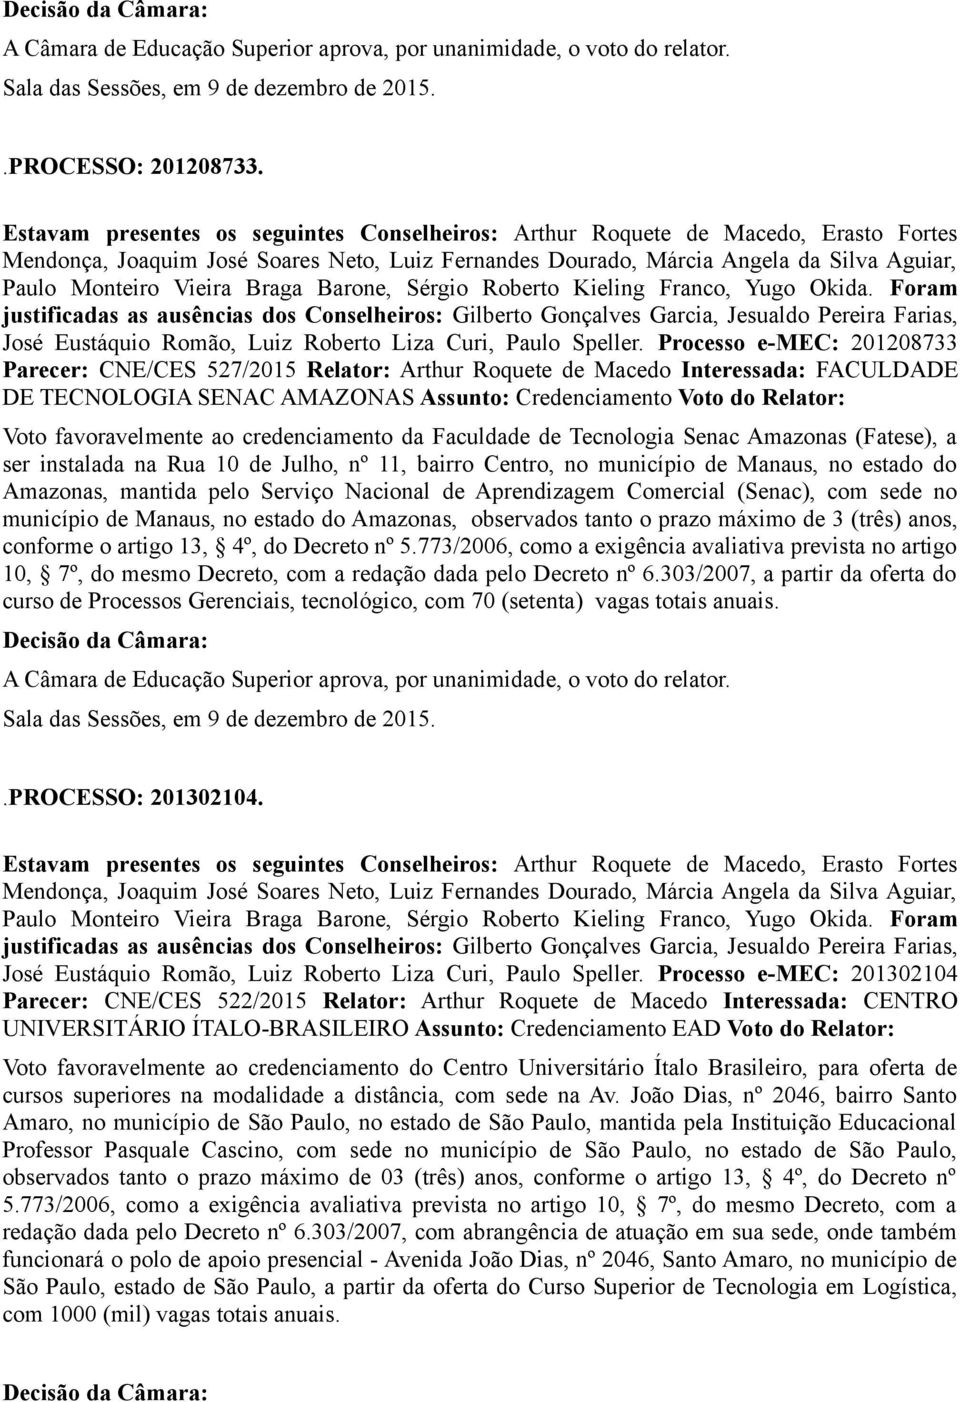 Processo e-mec: 201208733 Parecer: CNE/CES 527/2015 Relator: Arthur Roquete de Macedo Interessada: FACULDADE DE TECNOLOGIA SENAC AMAZONAS Assunto: Credenciamento Voto do Relator: Voto favoravelmente